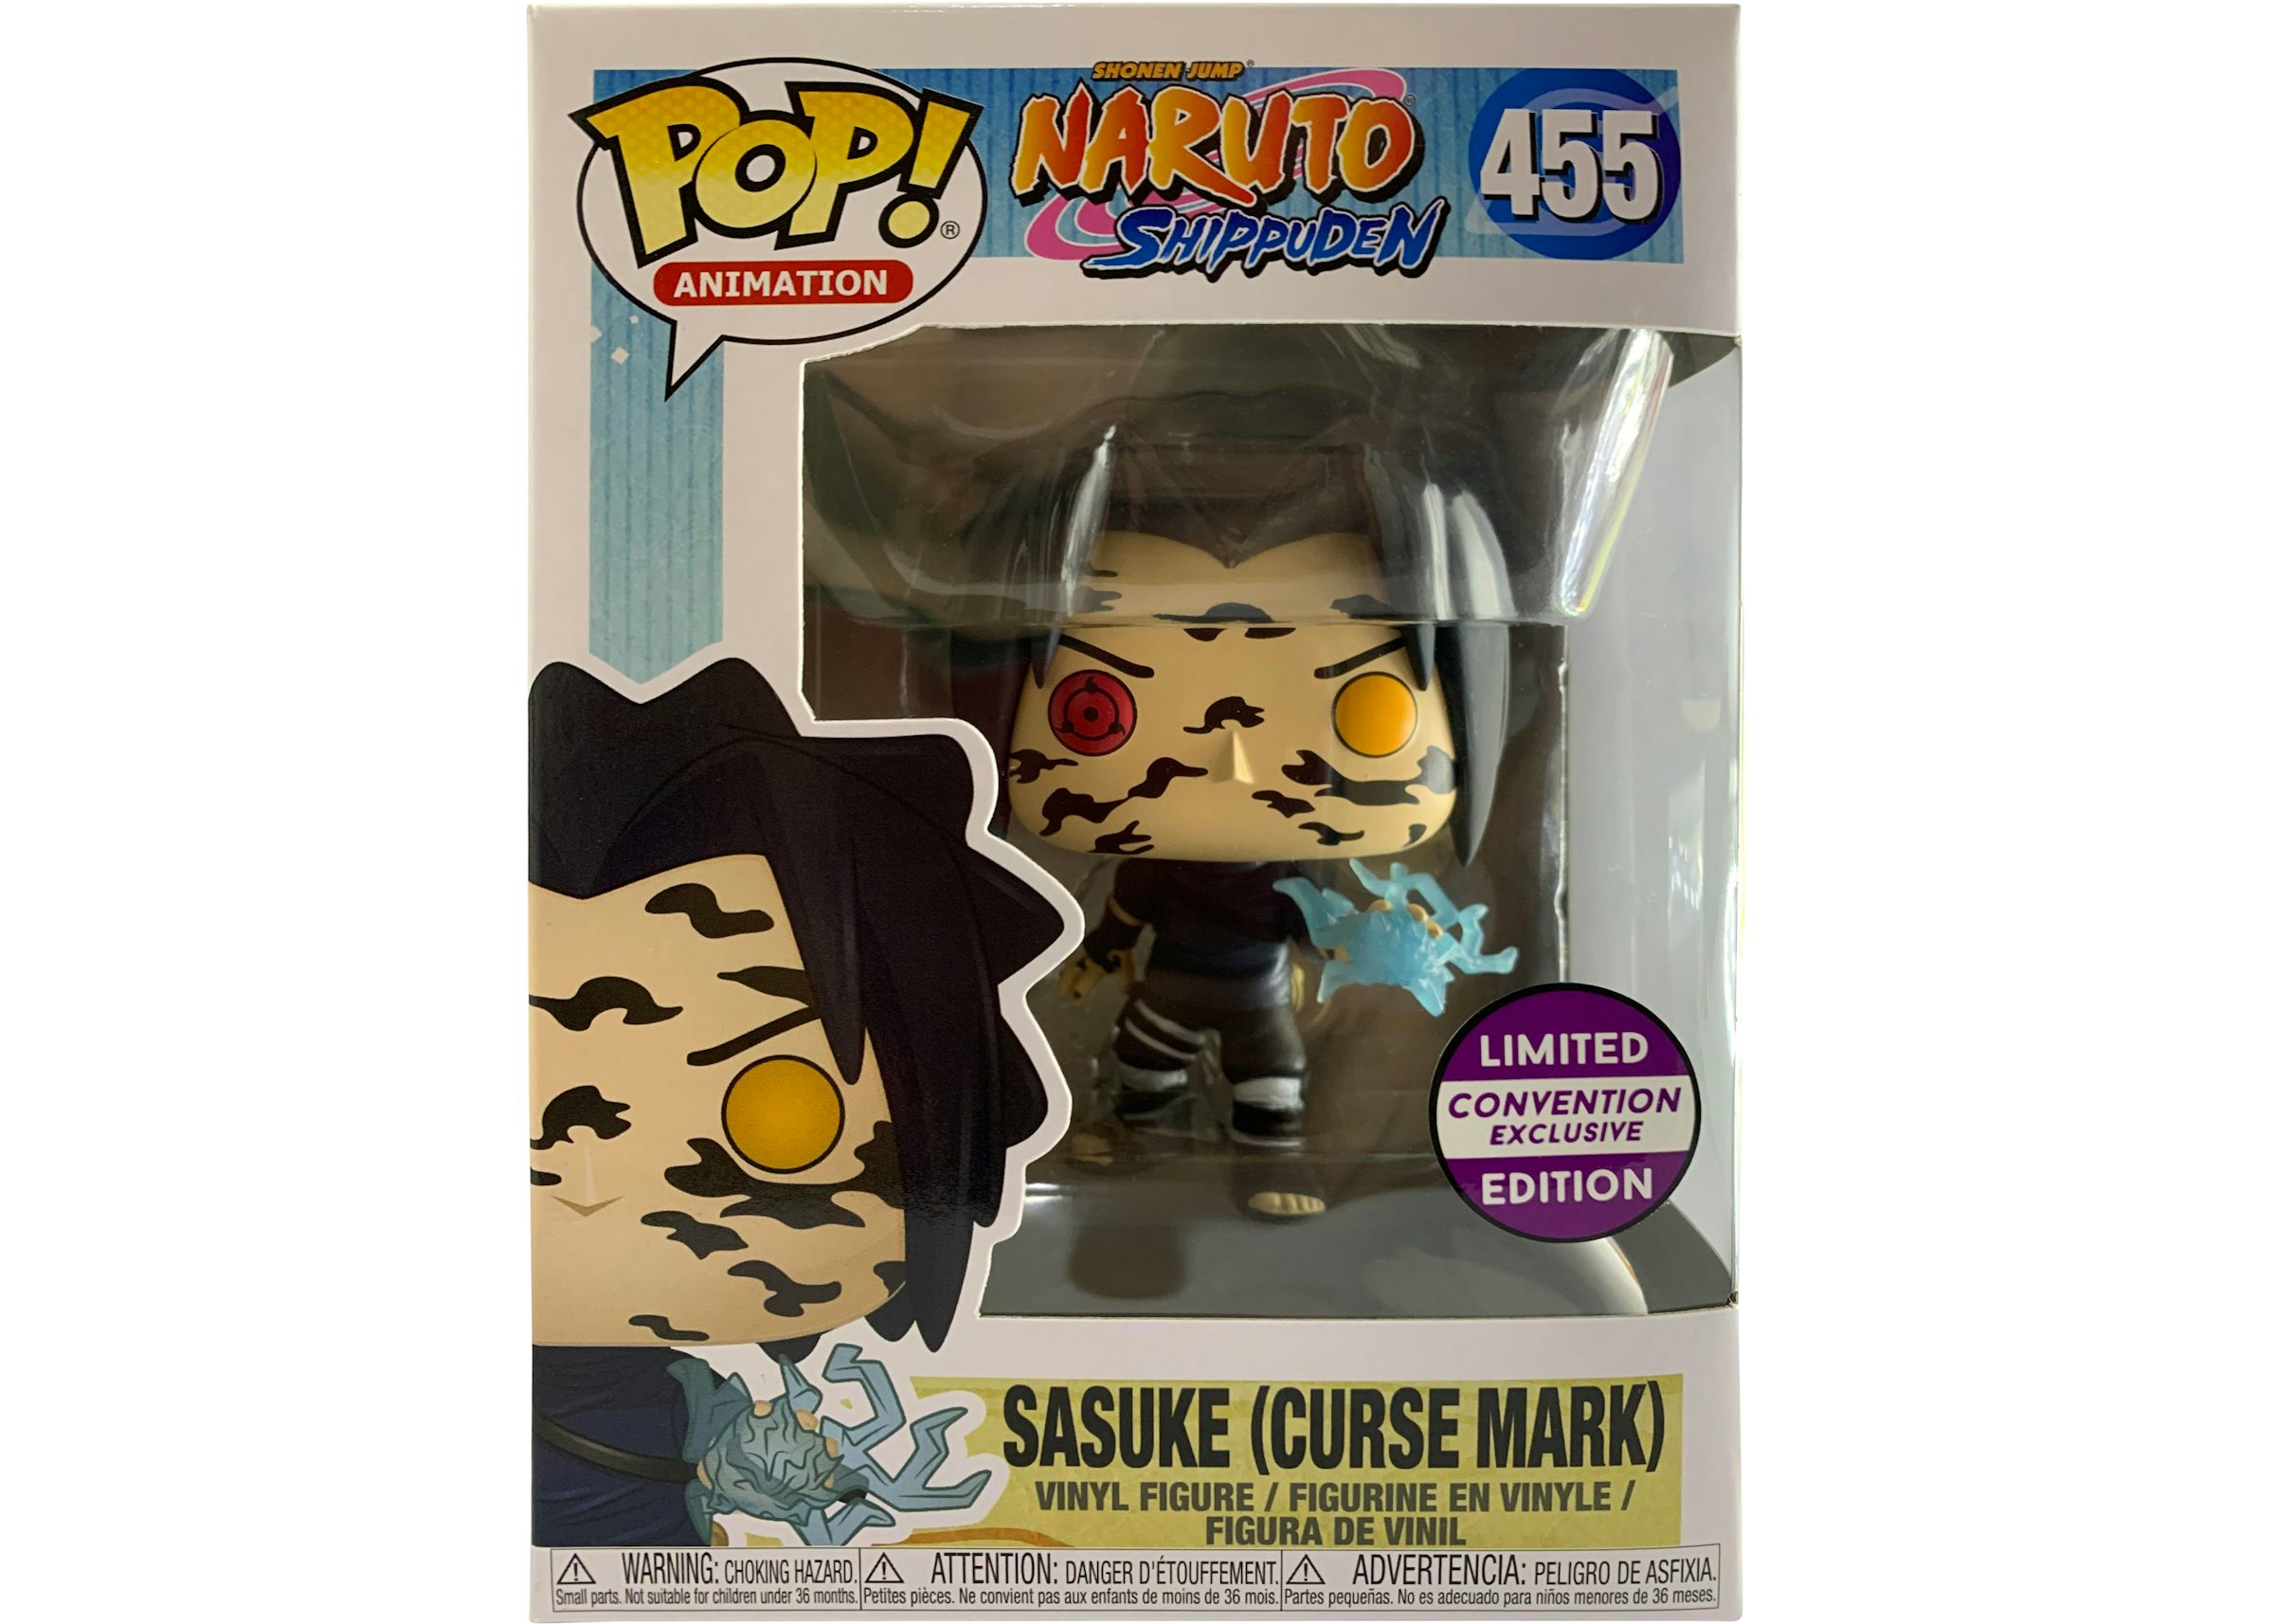 Funko Pop! Animation Nartuo Shippuden Sasuke (Curse Mark) Convention  Exclusive Figure #455